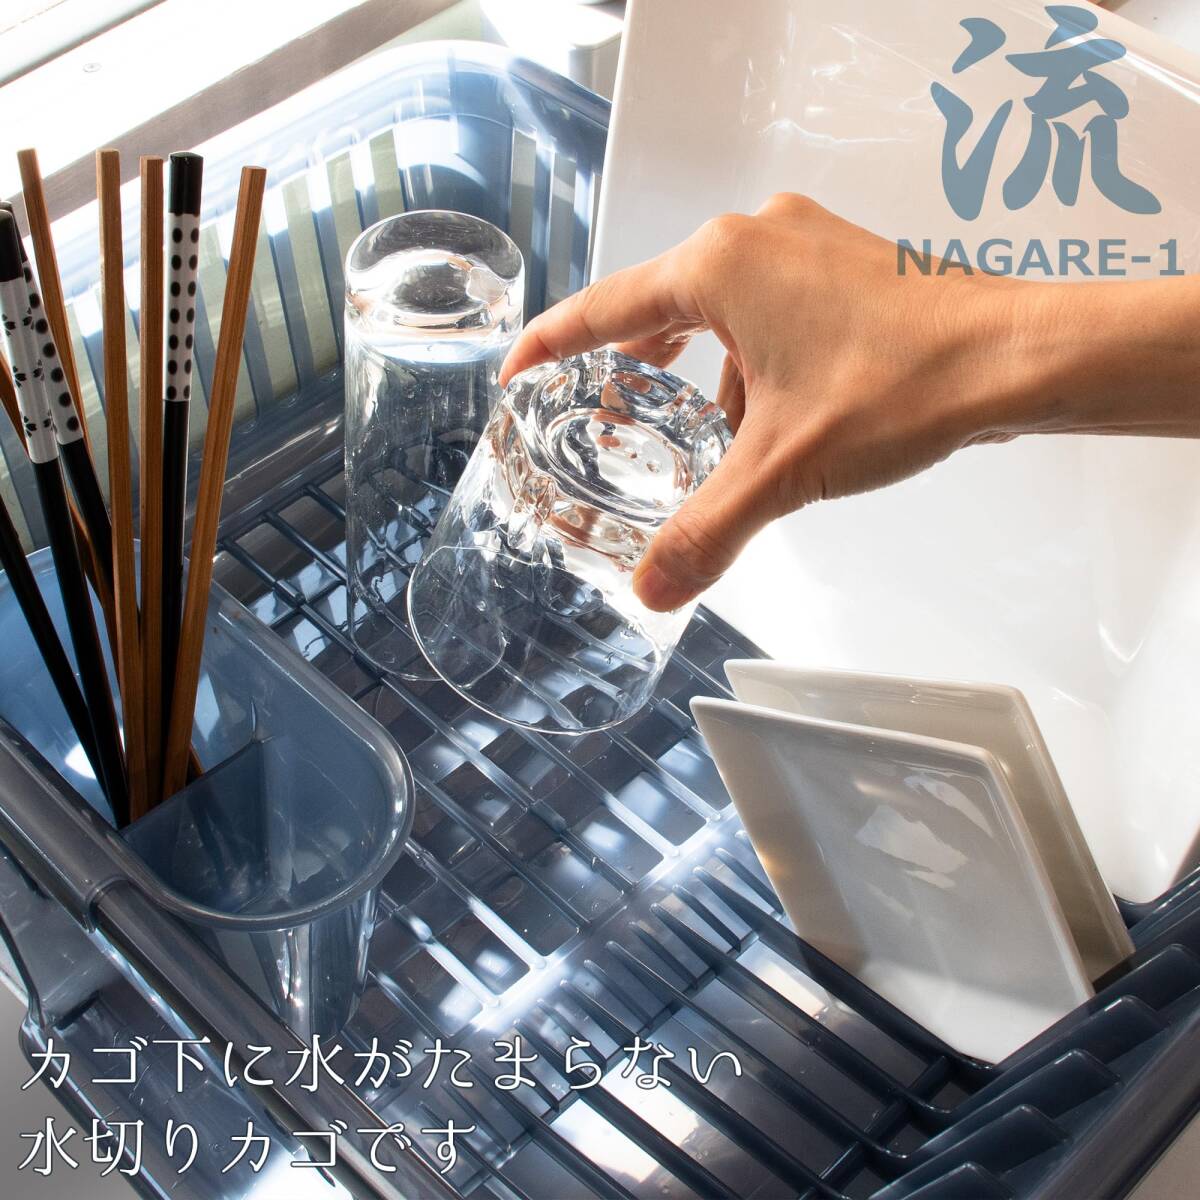 サンコープラスチック 日本製 水切りかご 皿立て水切り 流 No.1 縦型 箸立て付き ネイビーブルー_画像2